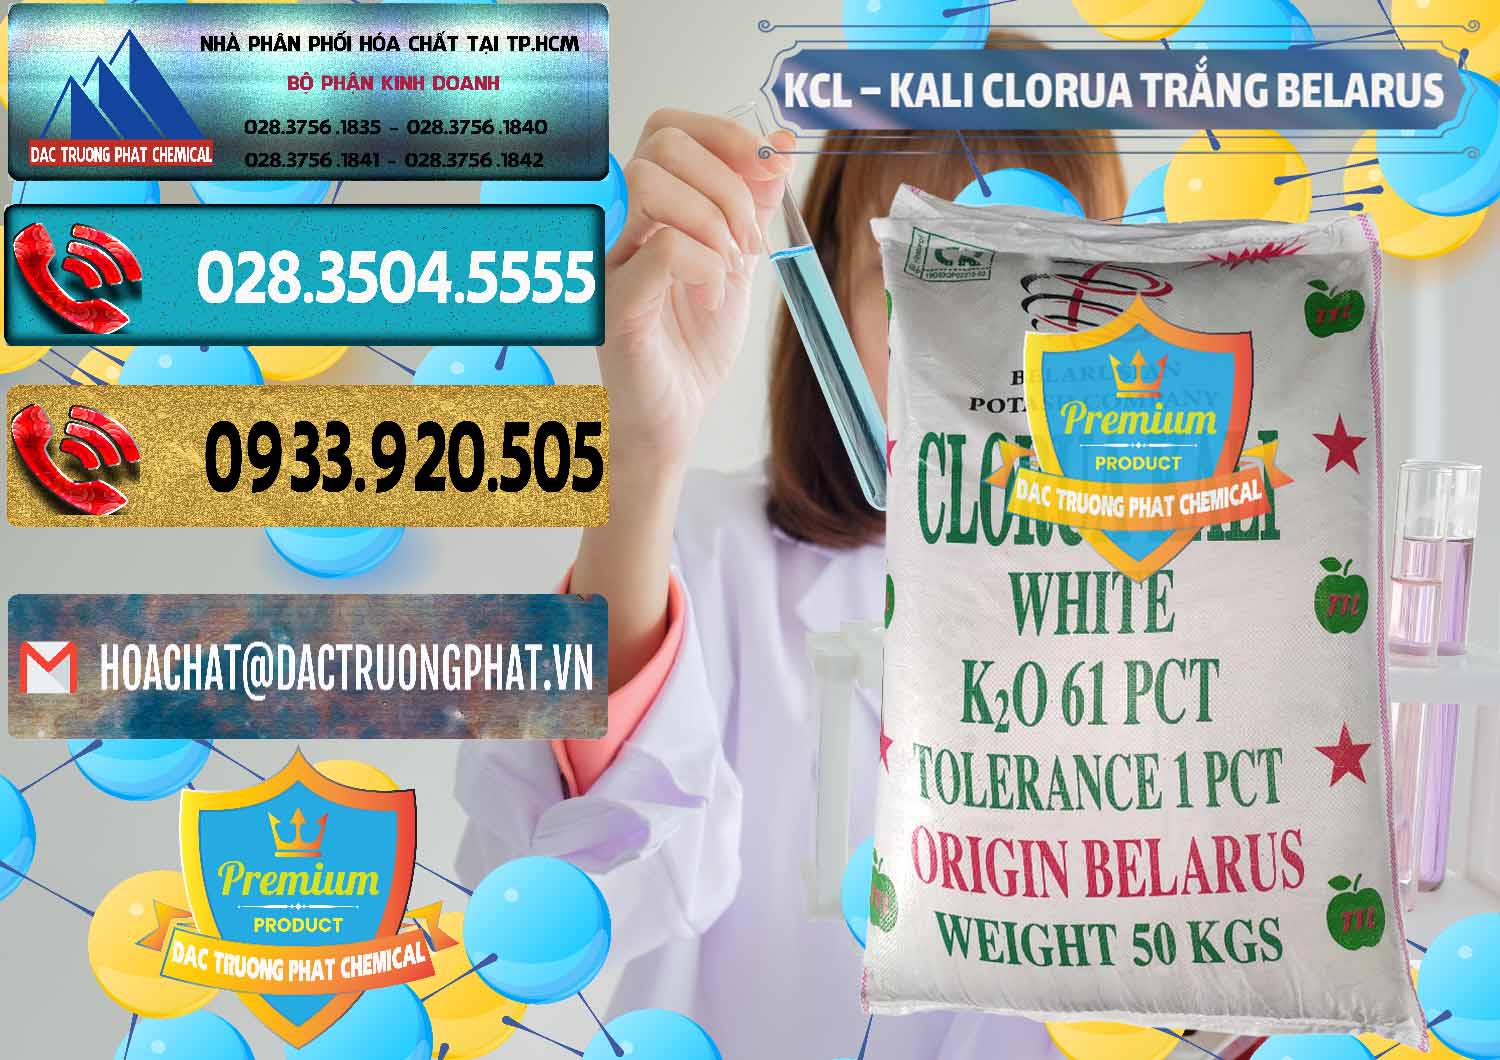 Nhà cung cấp _ bán KCL – Kali Clorua Trắng Belarus - 0085 - Đơn vị cung cấp ( bán ) hóa chất tại TP.HCM - hoachatdetnhuom.com